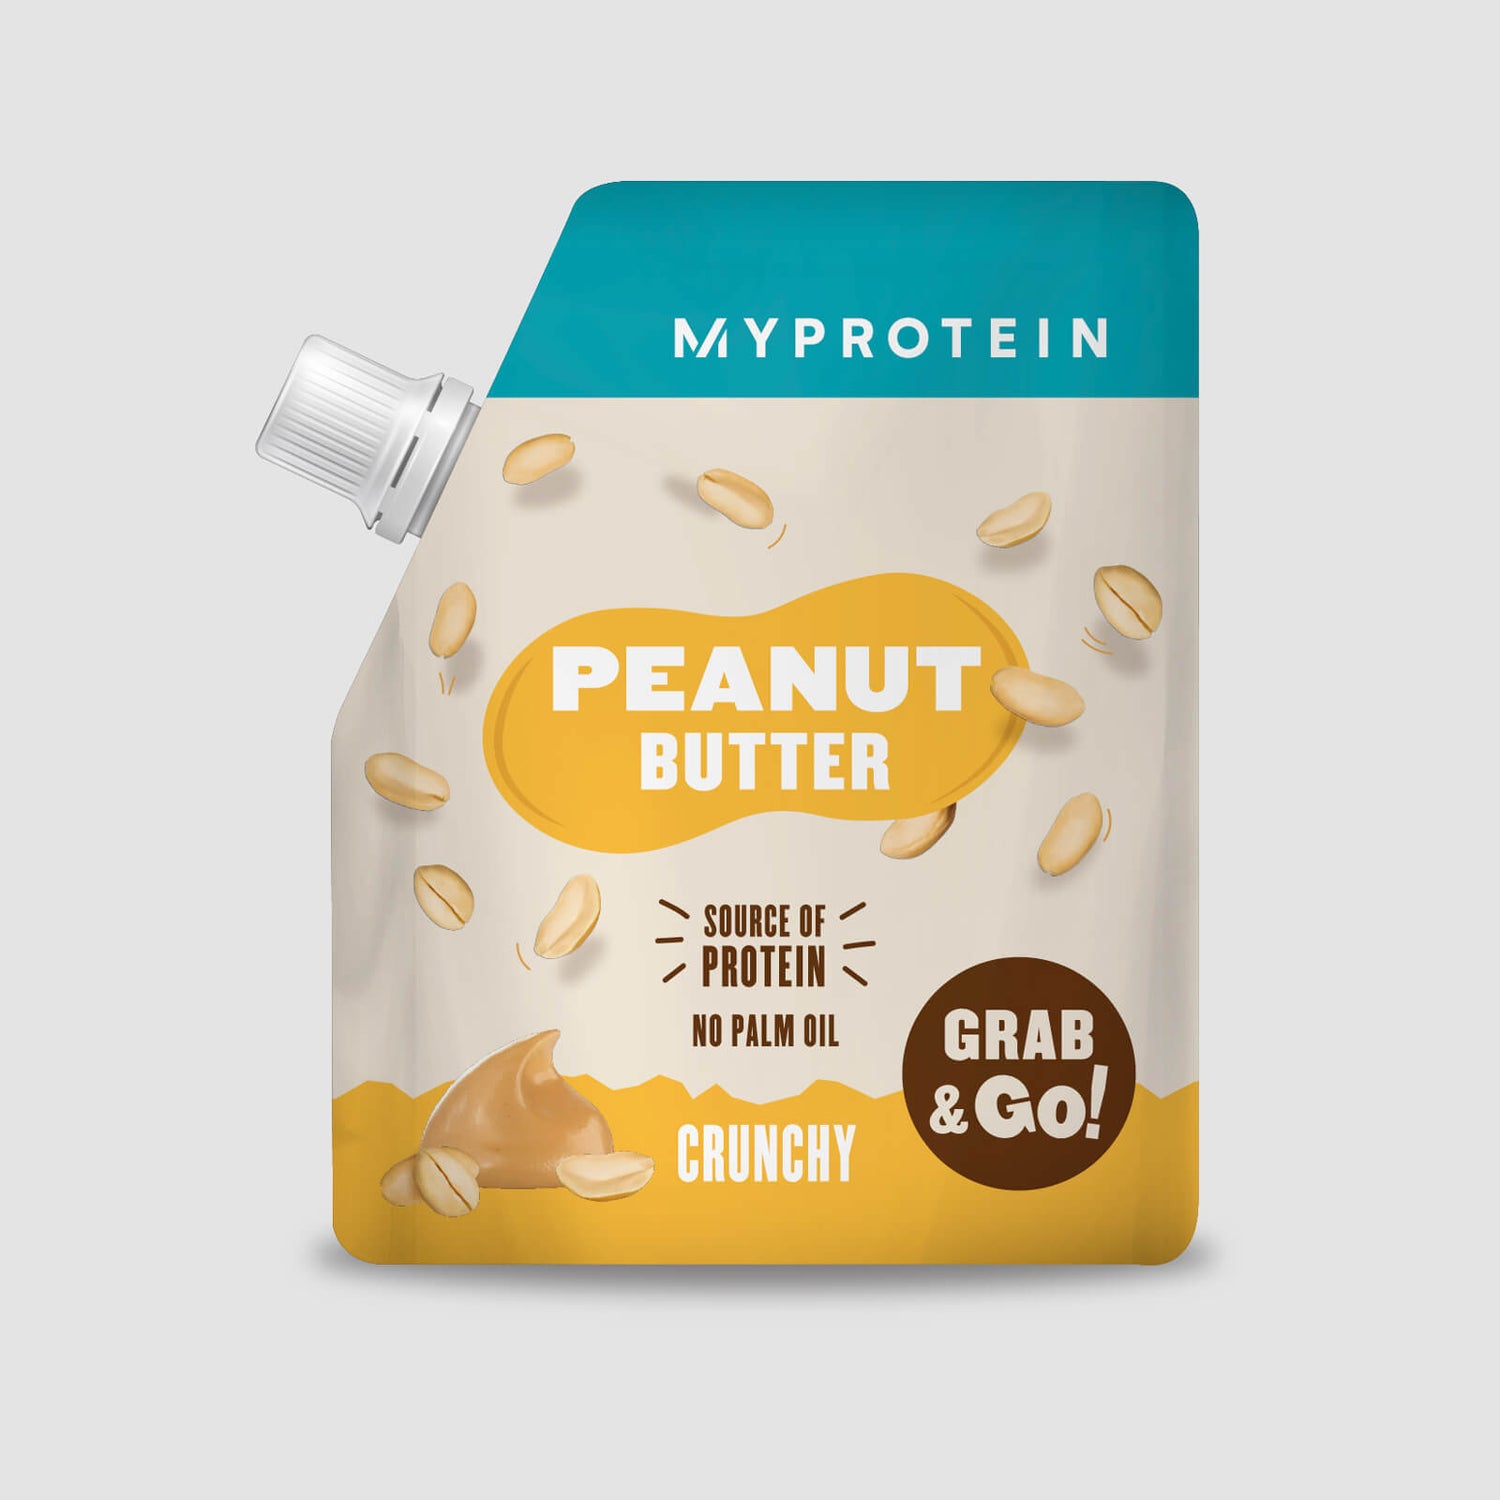 Peanut Butter - Original - Crunchy